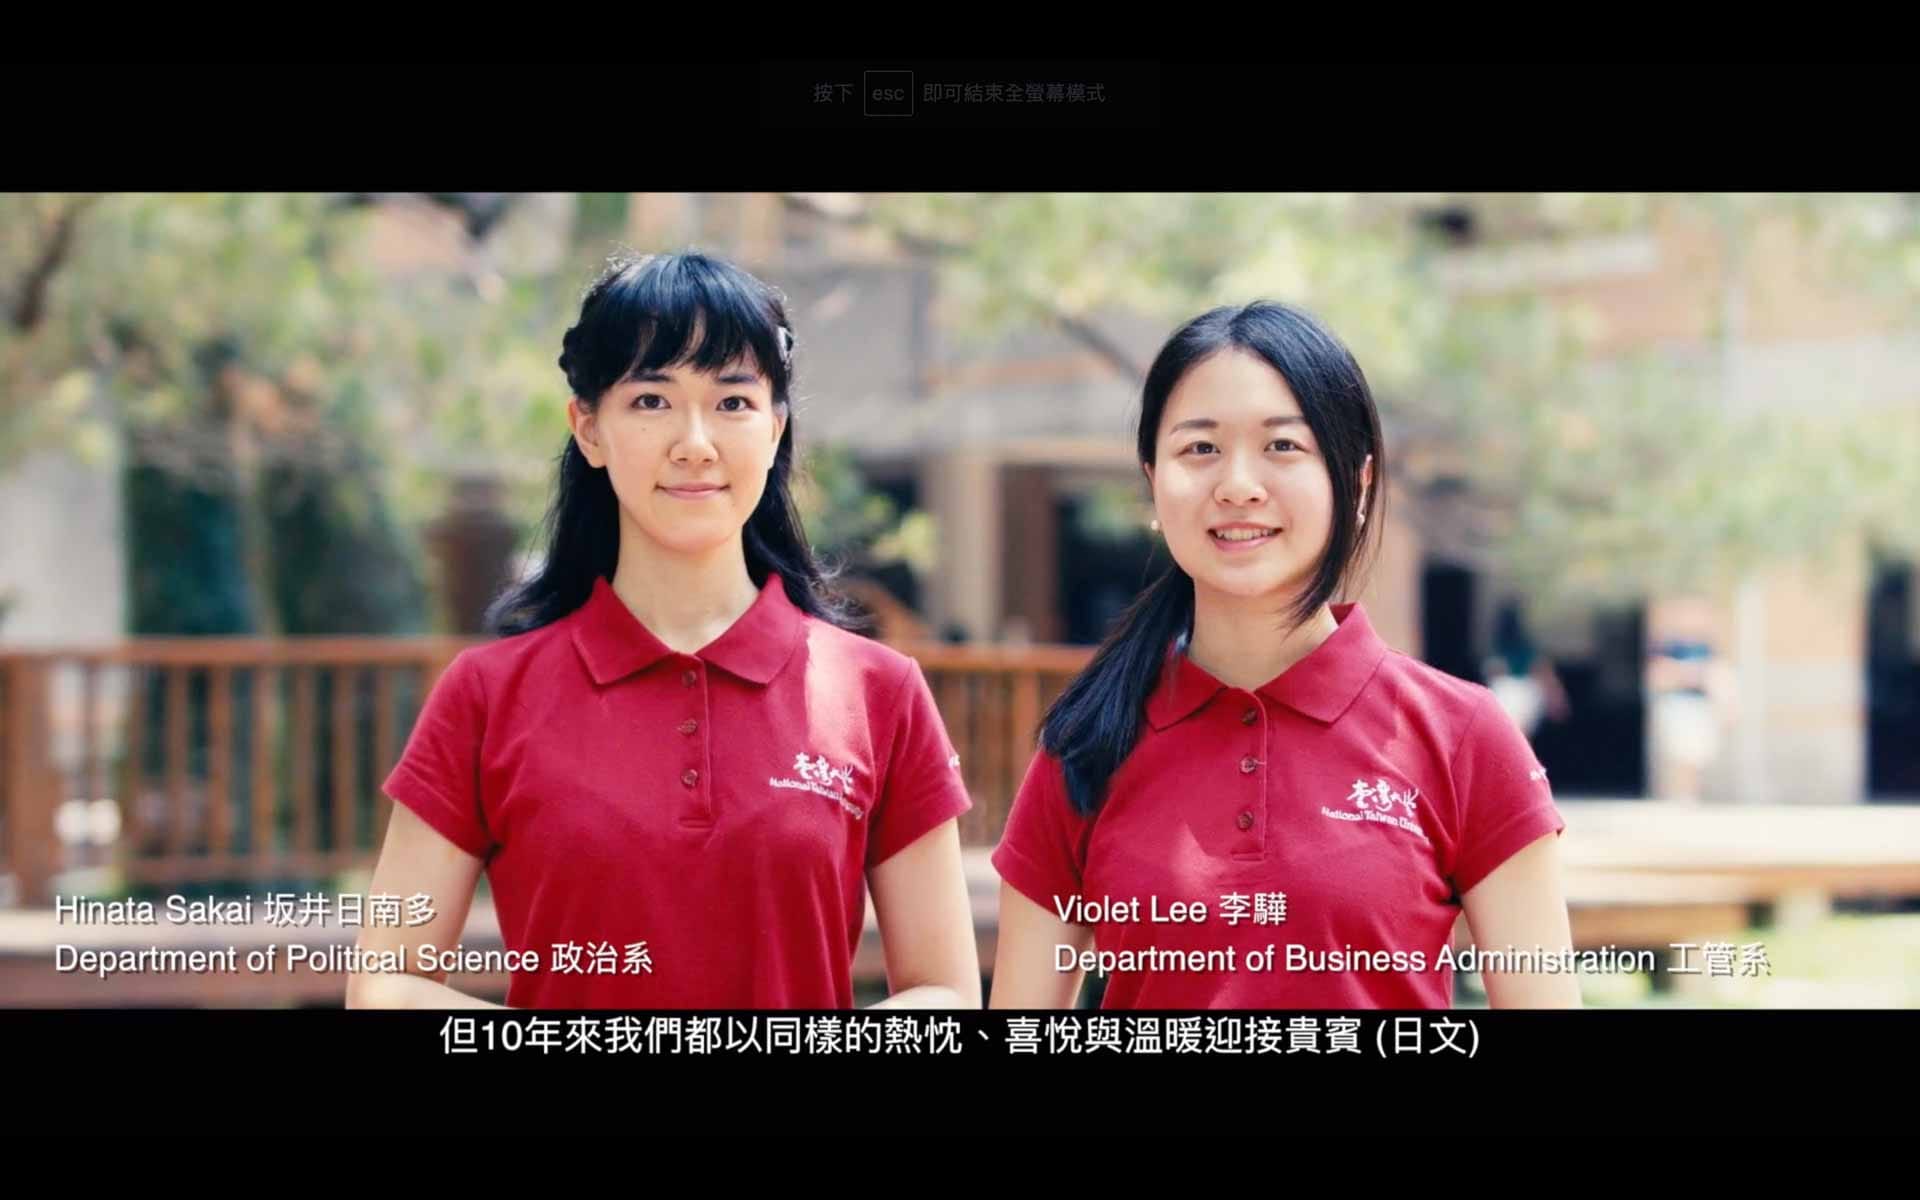 【形象影片】2017 國立台灣大學禮賓學生